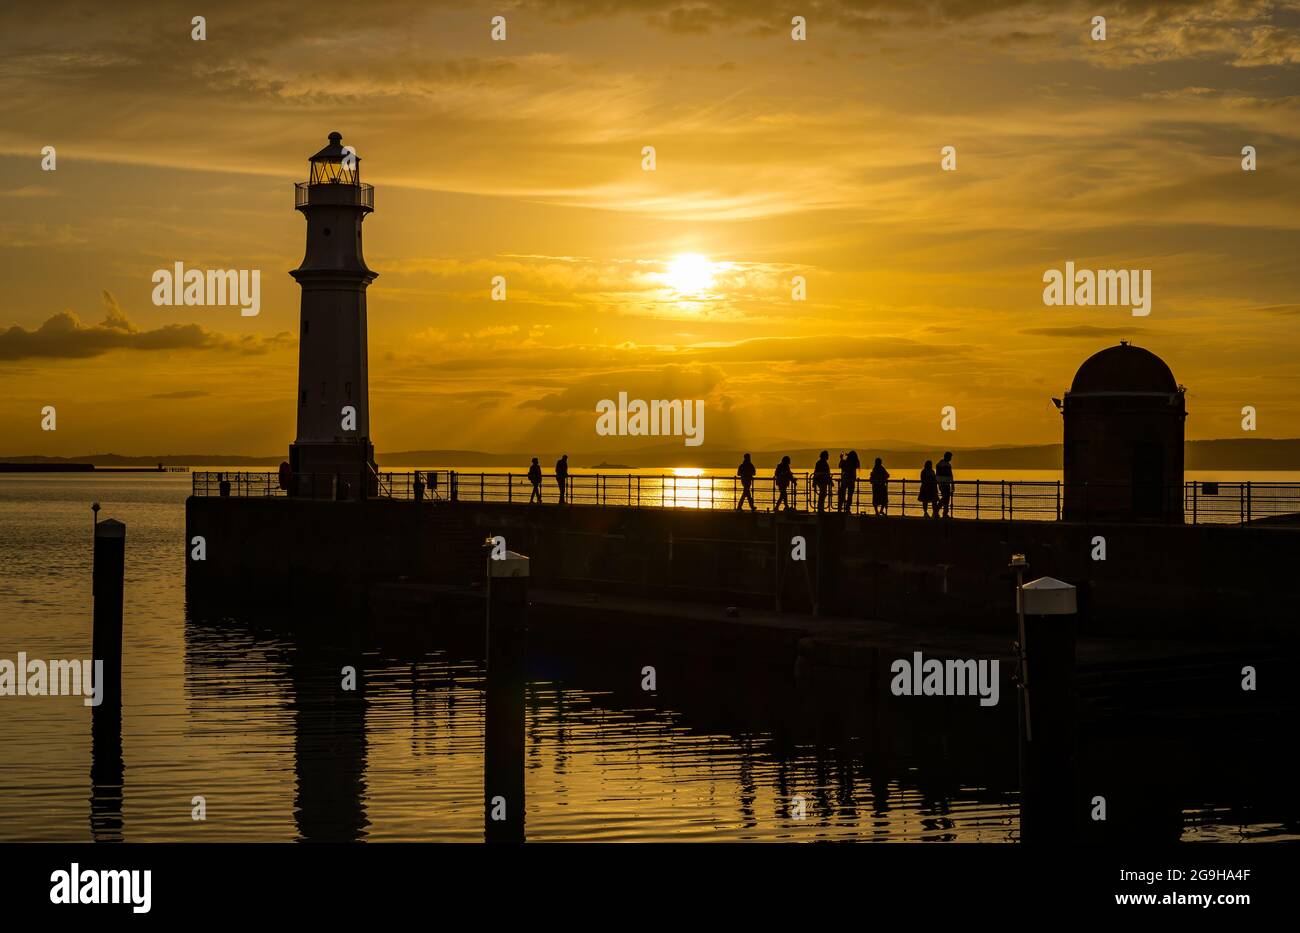 Le persone si sono sfrecciate sul molo del porto di Newhaven e sul faro in un colorato cielo arancione al tramonto, Edimburgo, Scozia, Regno Unito Foto Stock